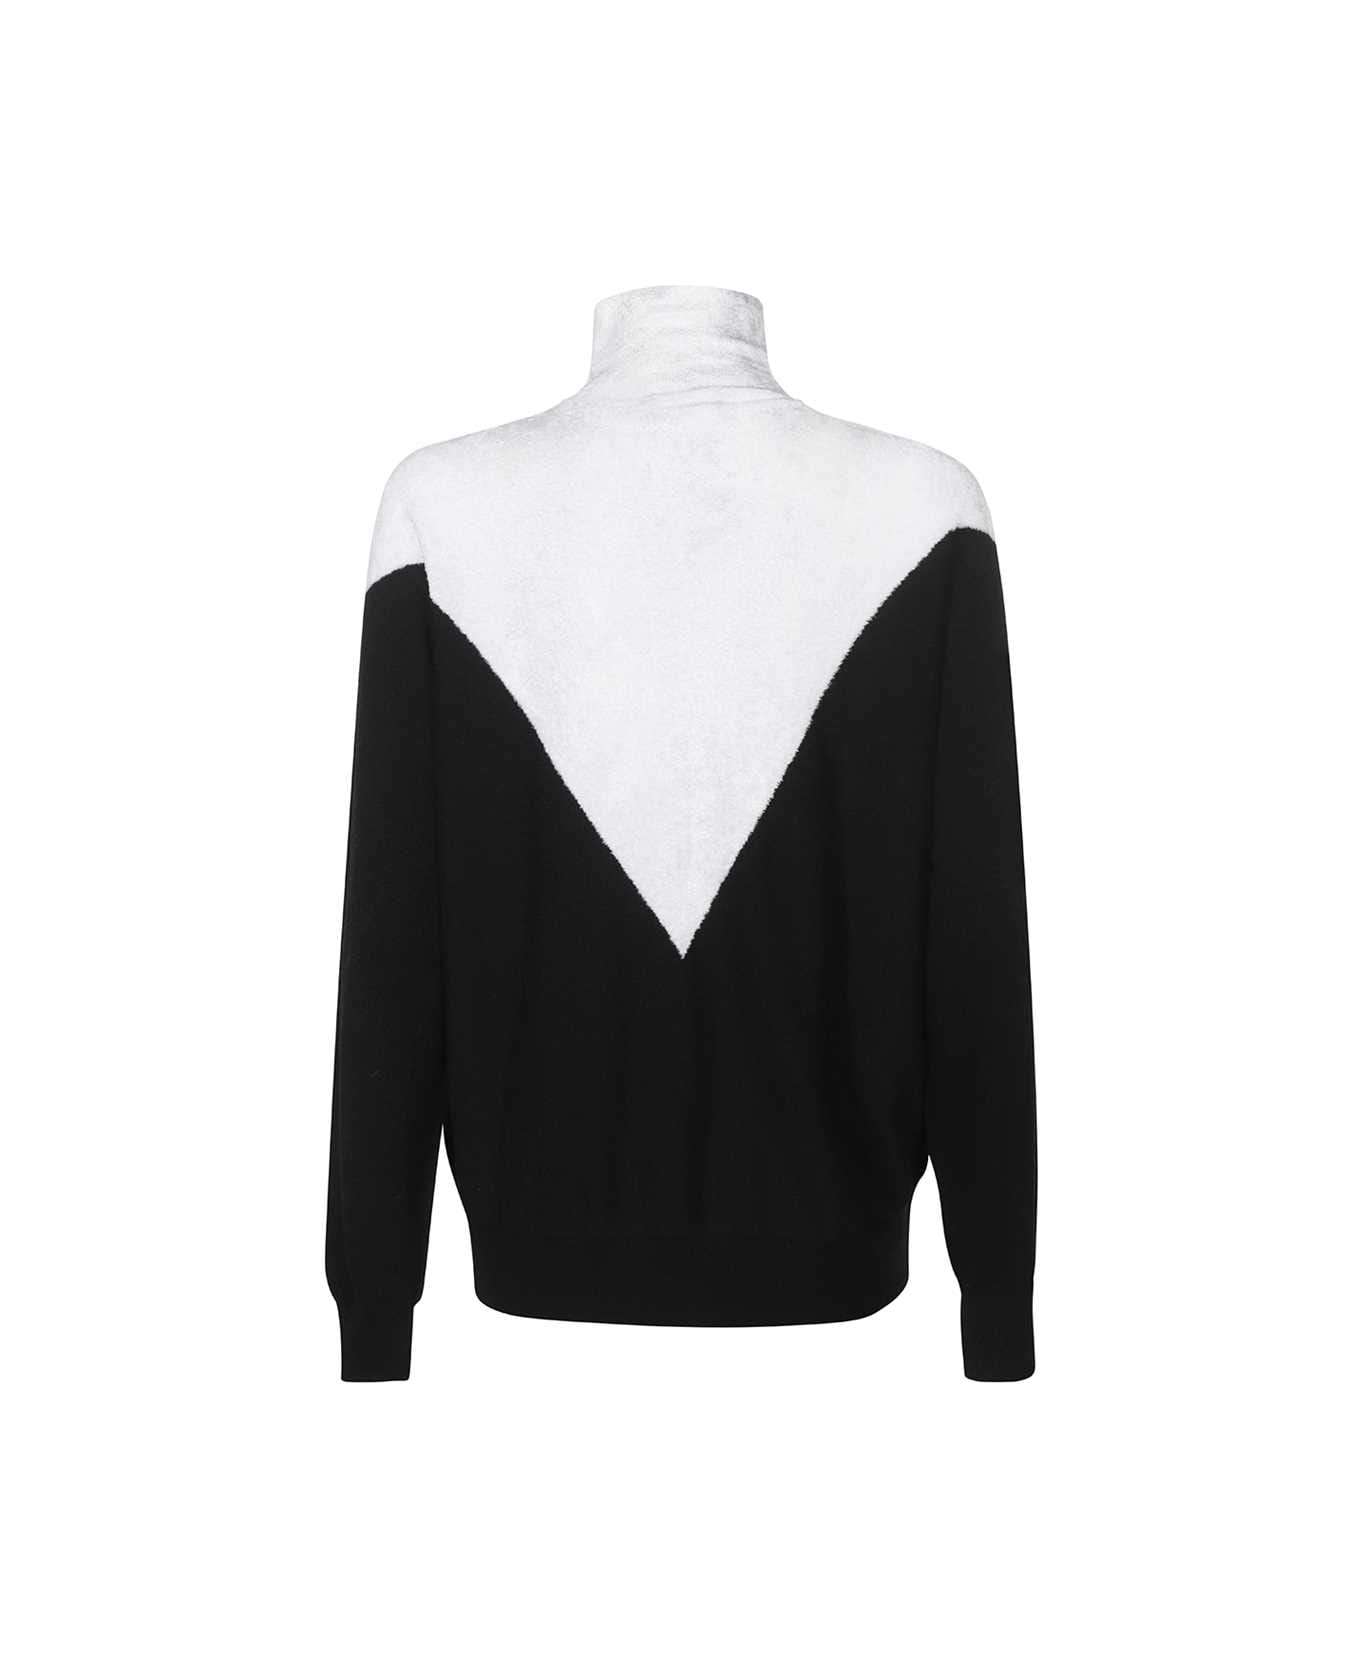 Emporio Armani Turtleneck Sweater - White